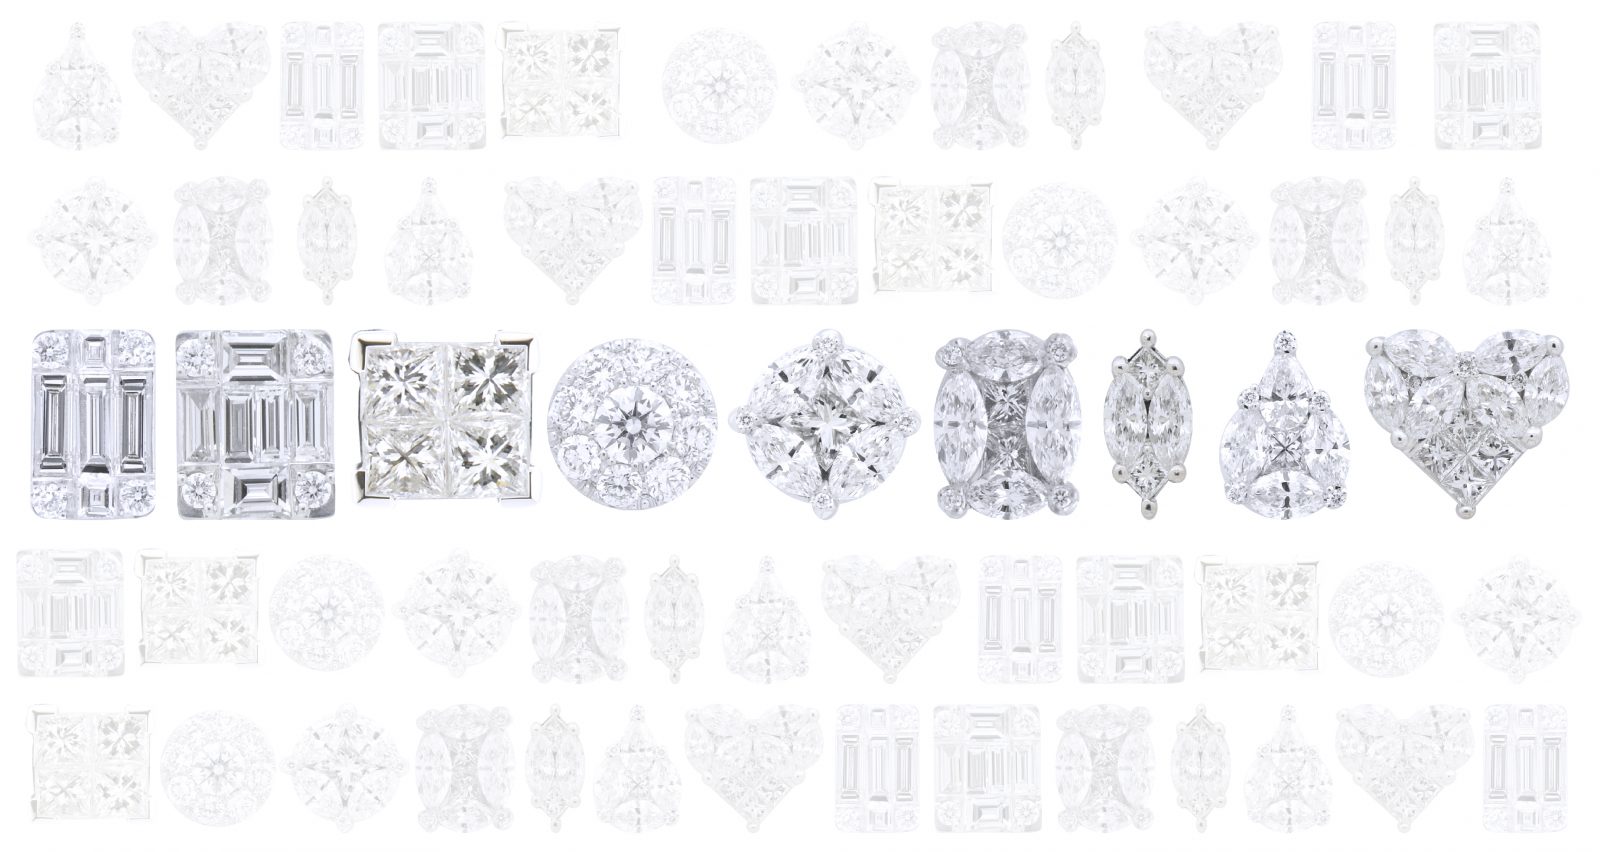 ทำความรู้จักกับ ดีไซน์ และส่วนประกอบ ของเพชรประกบ เพชรต่อ ราคา illusion setting diamond design เพชรประกบ เพชรต่อ illusion setting คู่บ่าวสาว หมั้น วิธี เริ่ม ขั้นตอน แหวนหมั้น แหวนเพชร แหวนผู้หญิง แหวนผู้ชาย แหวนทองคำ แหวนทองขาว แหวนทองคำขาว โรงแรม งานเช้า งานเลี้ยง จัดเตรียม ร้านเพชร ร้านแหวน ร้านเครื่องประดับ ร้านจิวเวลรี่ เซตแต่งงาน สร้อยคอ จี้ ต่างหู เพชร แหวนเพชรแท้ ร้านไหนดี ซื้อแหวนแต่งงาน แนะนำ รีวิว ราคา